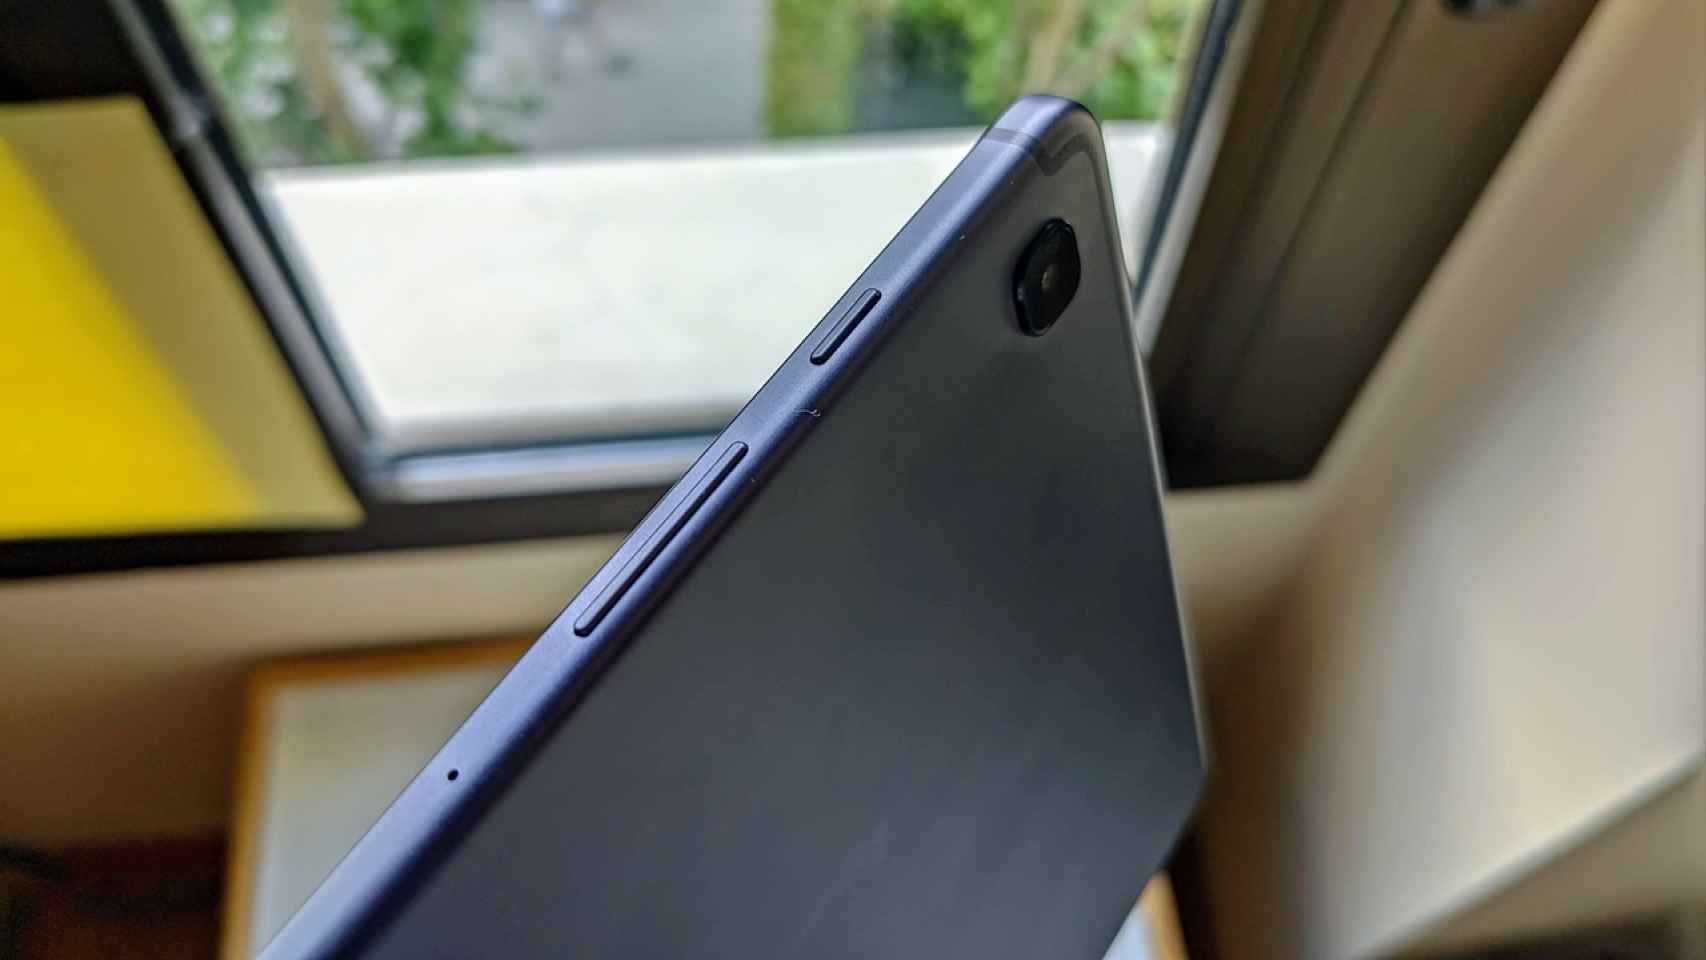 La Galaxy Tab S6 Lite recibe Android 11 con One UI 3.1 y recibe el modo escritorio de Samsung DeX